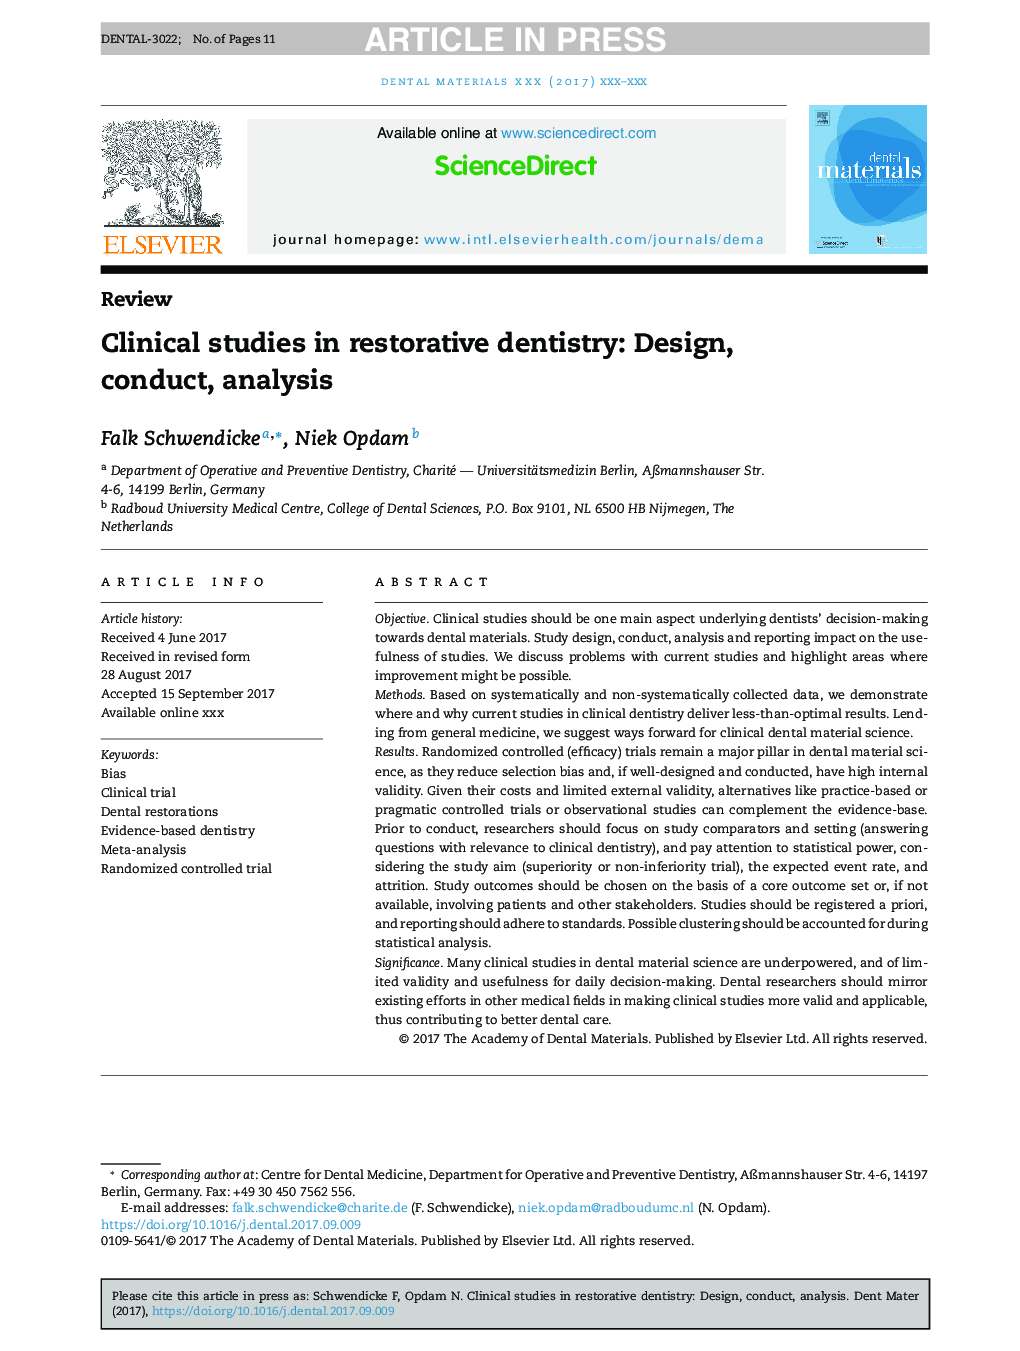 مطالعات بالینی در دندانپزشکی ترمیمی: طراحی، انجام، تجزیه و تحلیل 